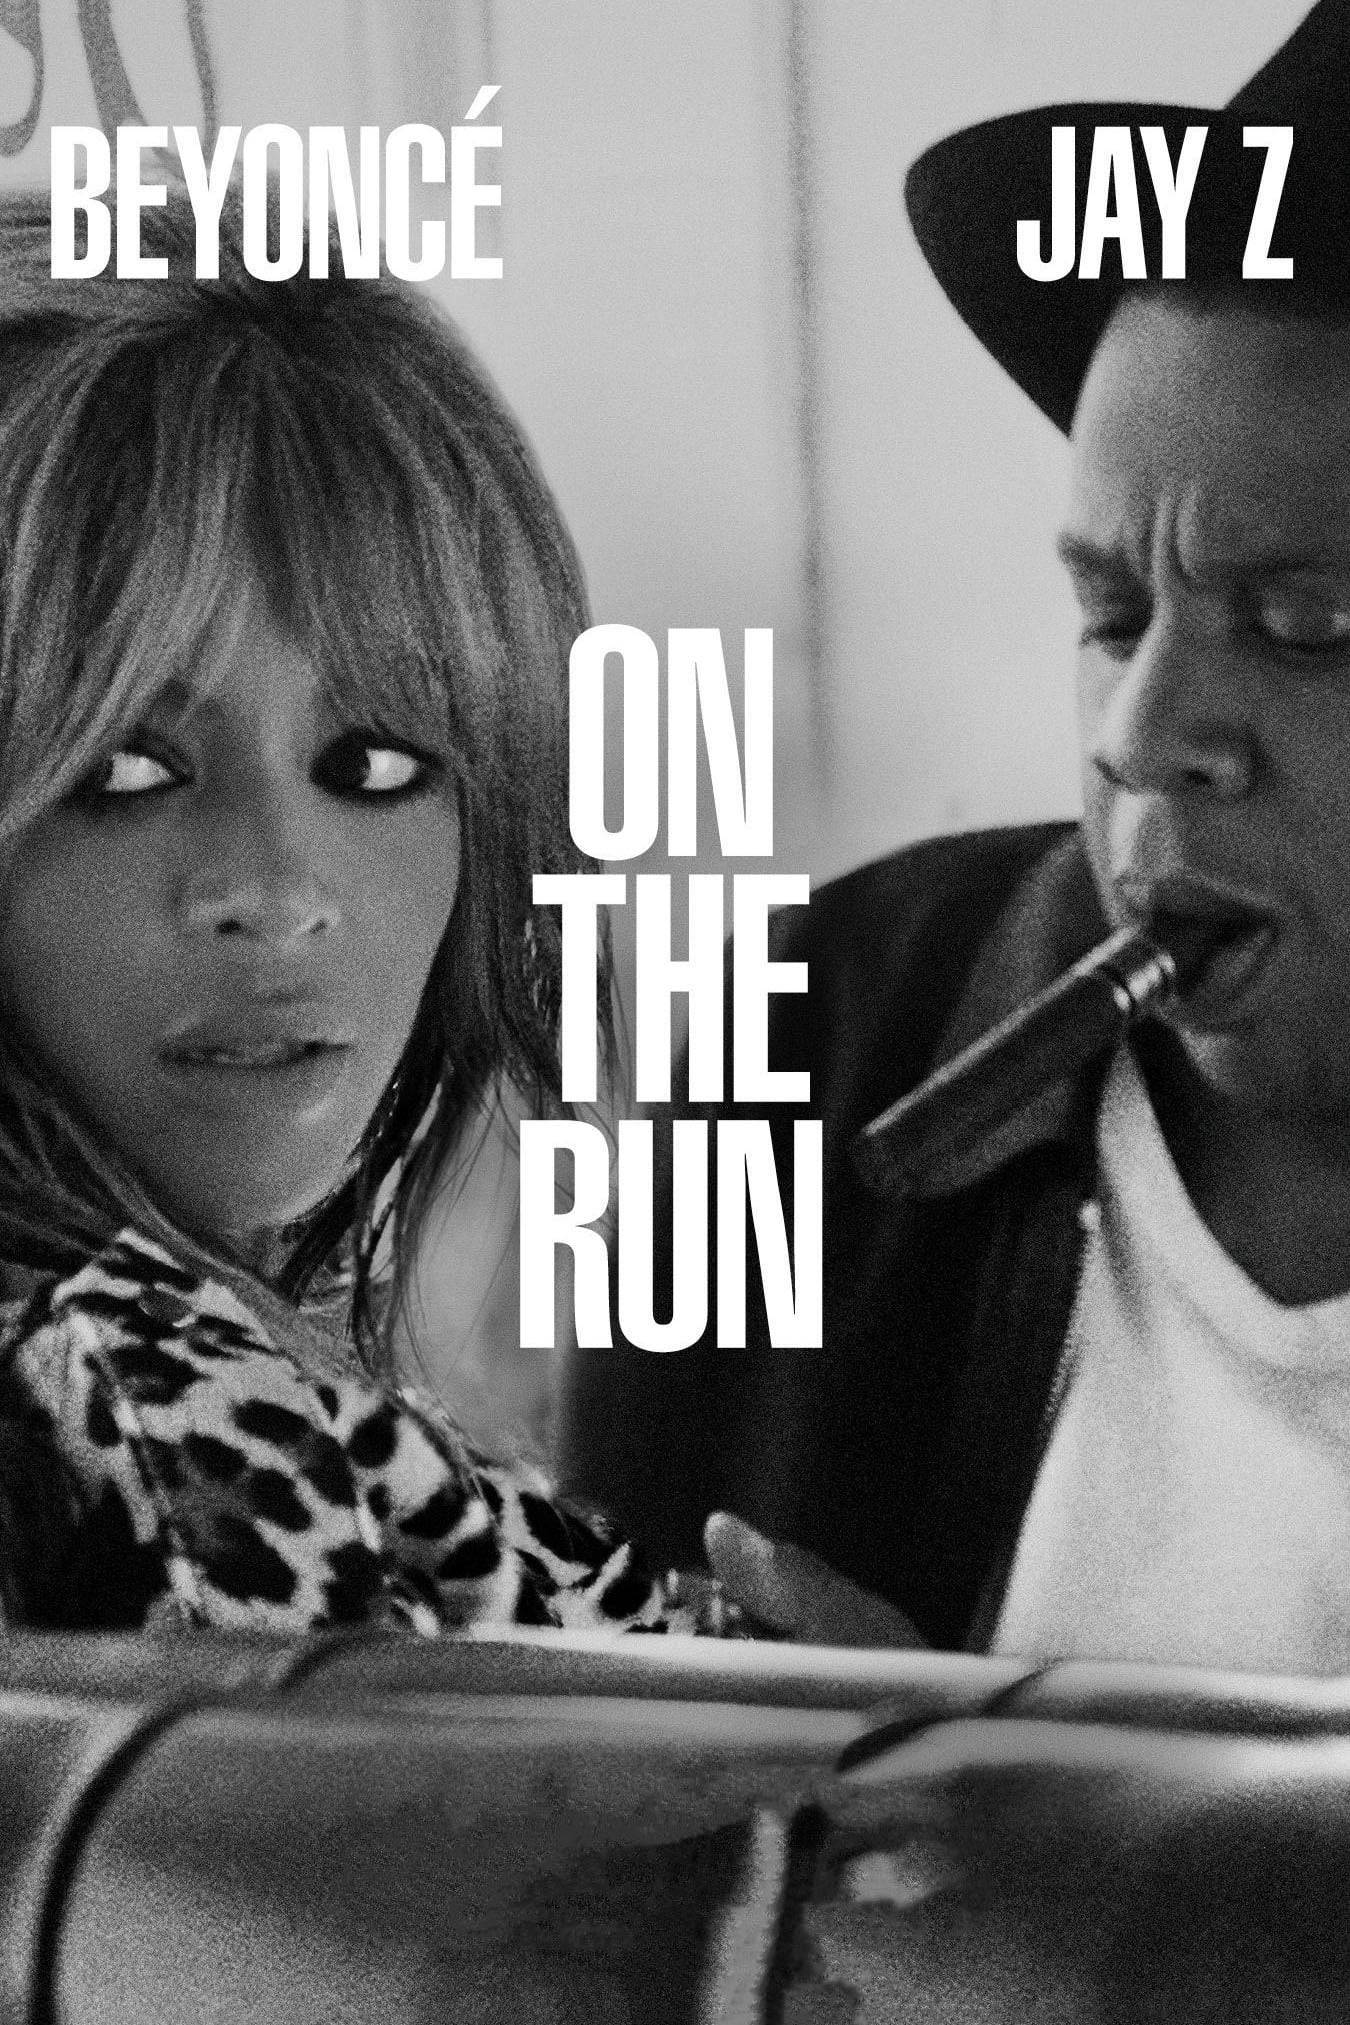 On the Run Tour : Beyoncé & Jay Z